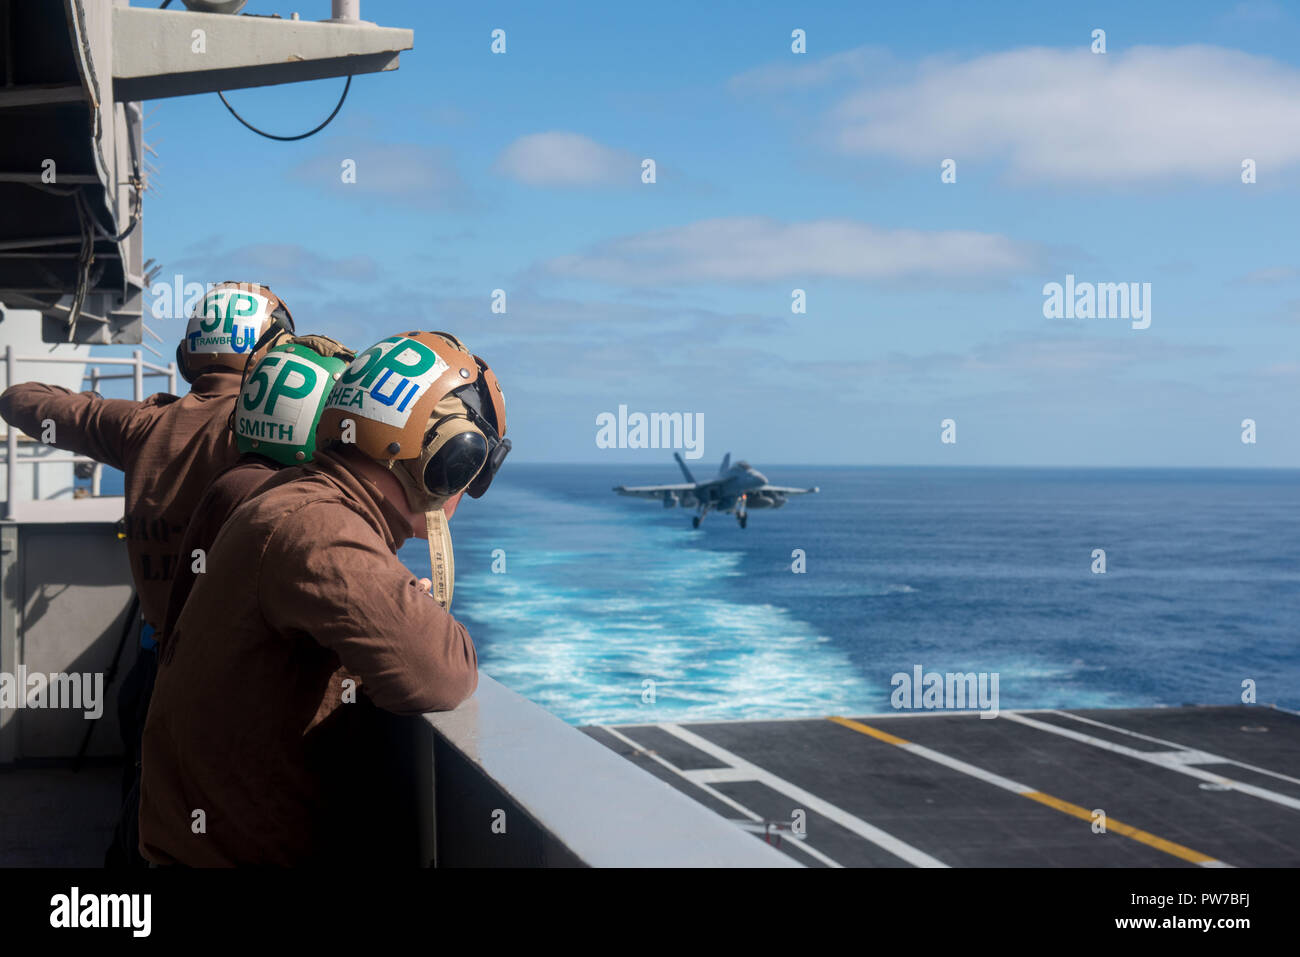 181009-N-RB149-0563 OCEANO PACIFICO (ott. 9, 2018) marinai osservare le operazioni di volo a bordo Nimitz-class portaerei USS Carl Vinson (CVN 70). (U.S. Foto di Marina di Massa Specialista comunicazione marinaio Nicholas Carter/rilasciato) Foto Stock